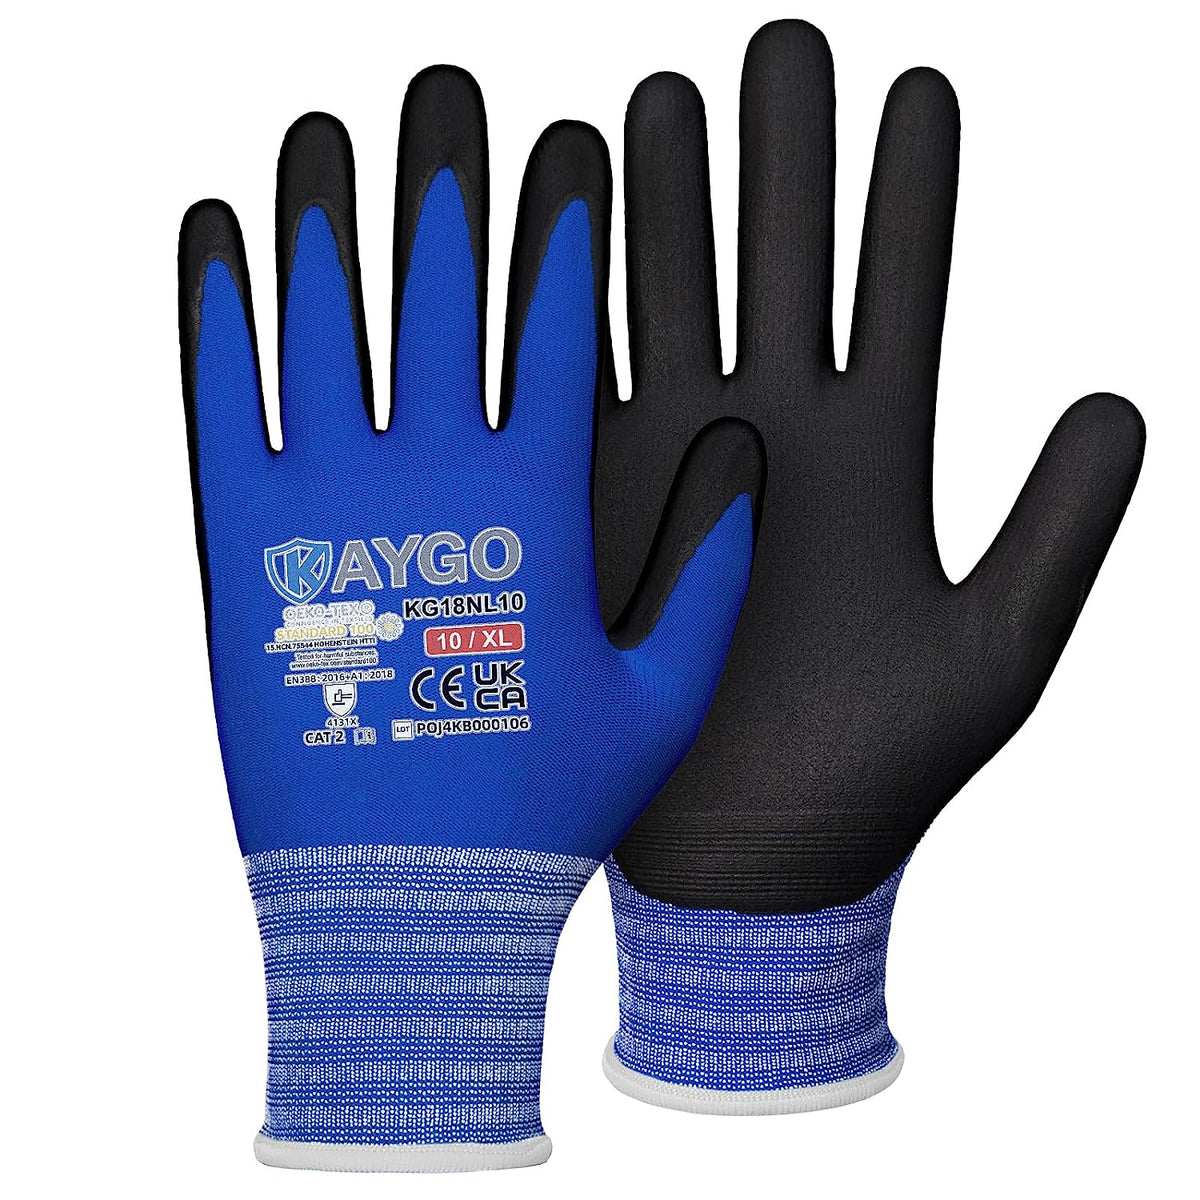 Achetez KAYGO gants de travail résistants aux coupures EN388 4X42C - 2  paires, revêtement en nitrile micromousse, lavable en machine, anti-coupures  pour le travail général, KG21N (Gris, S, taille 7):  ✓